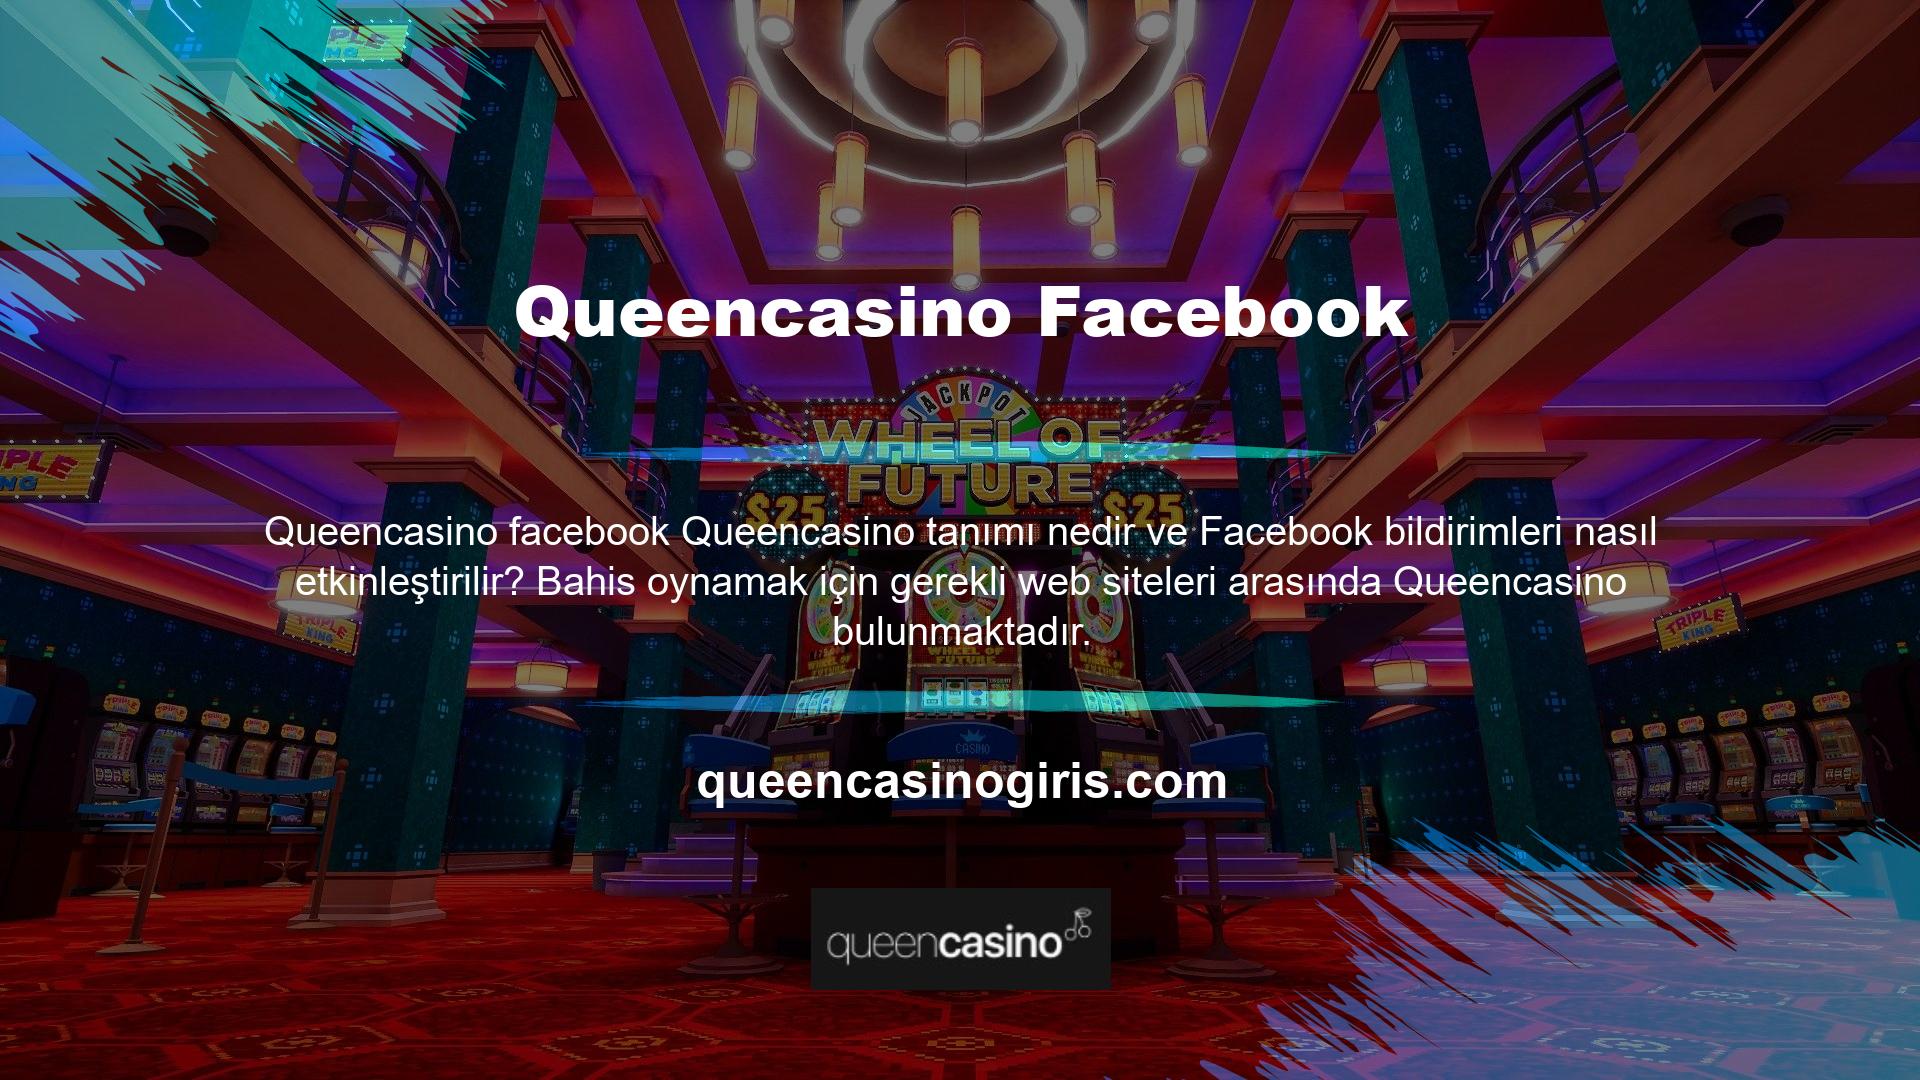 Queencasino anlamını nasıl tanımlarsınız? Facebook bildirimlerini etkinleştirme adımları nelerdir? Kullanıcıların site içinde nasıl çalışacaklarını seçebilmeleri için sitede seçenekler mevcuttur